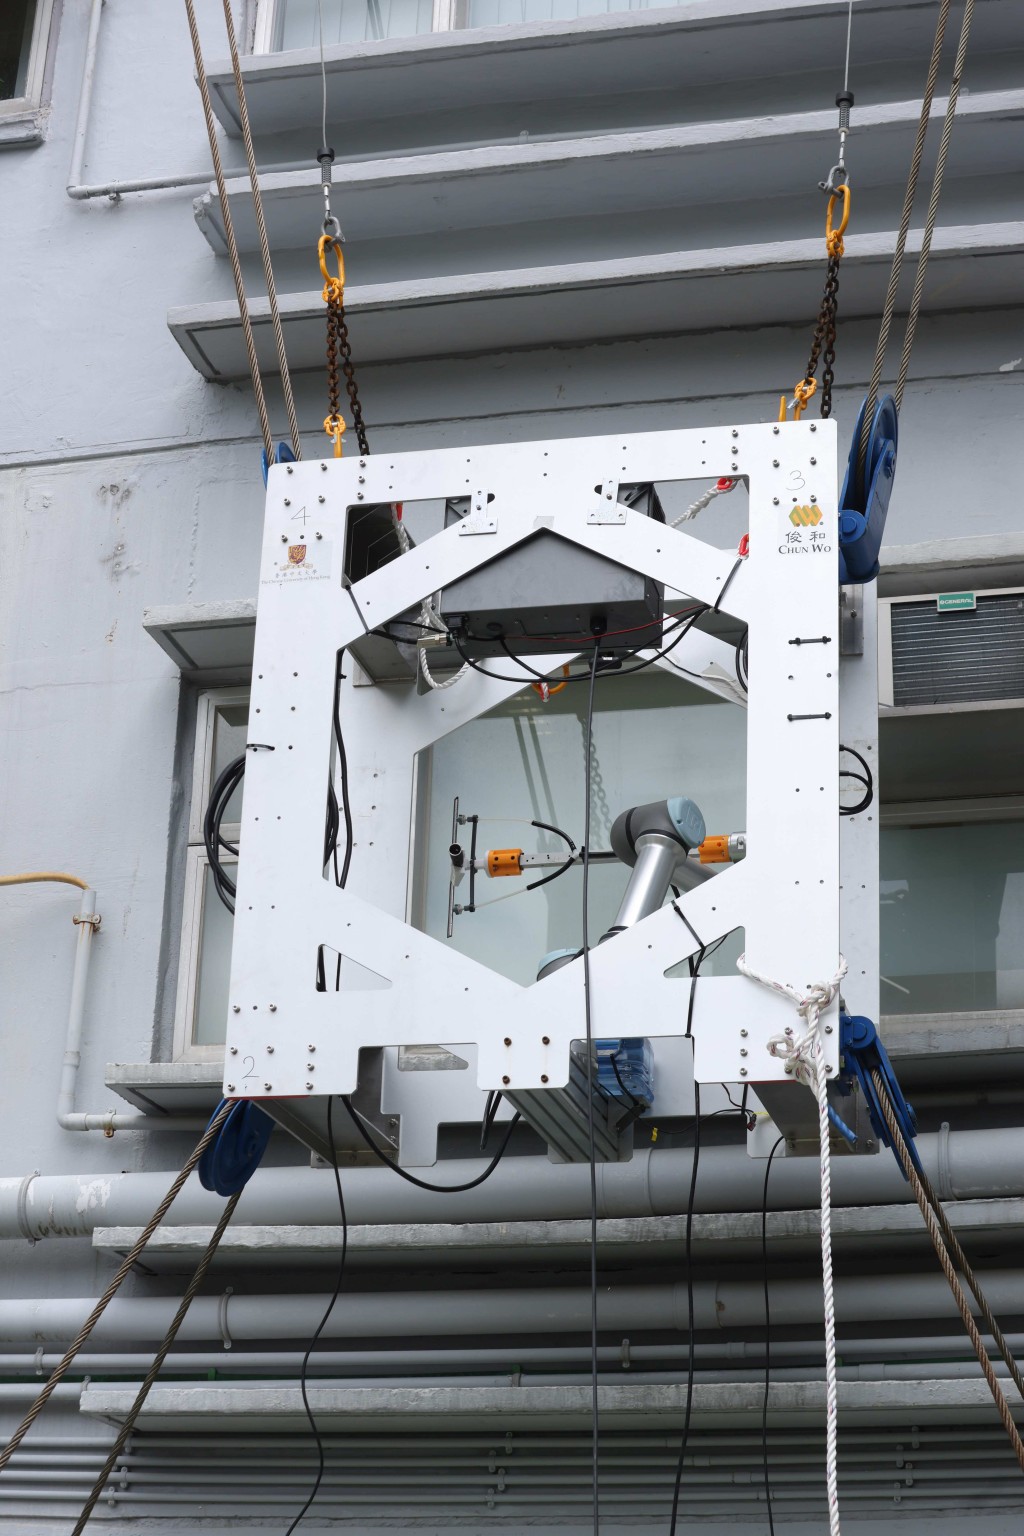  线控机械人系统安装于中大校园一幢建筑物外墙进行测试及示范。